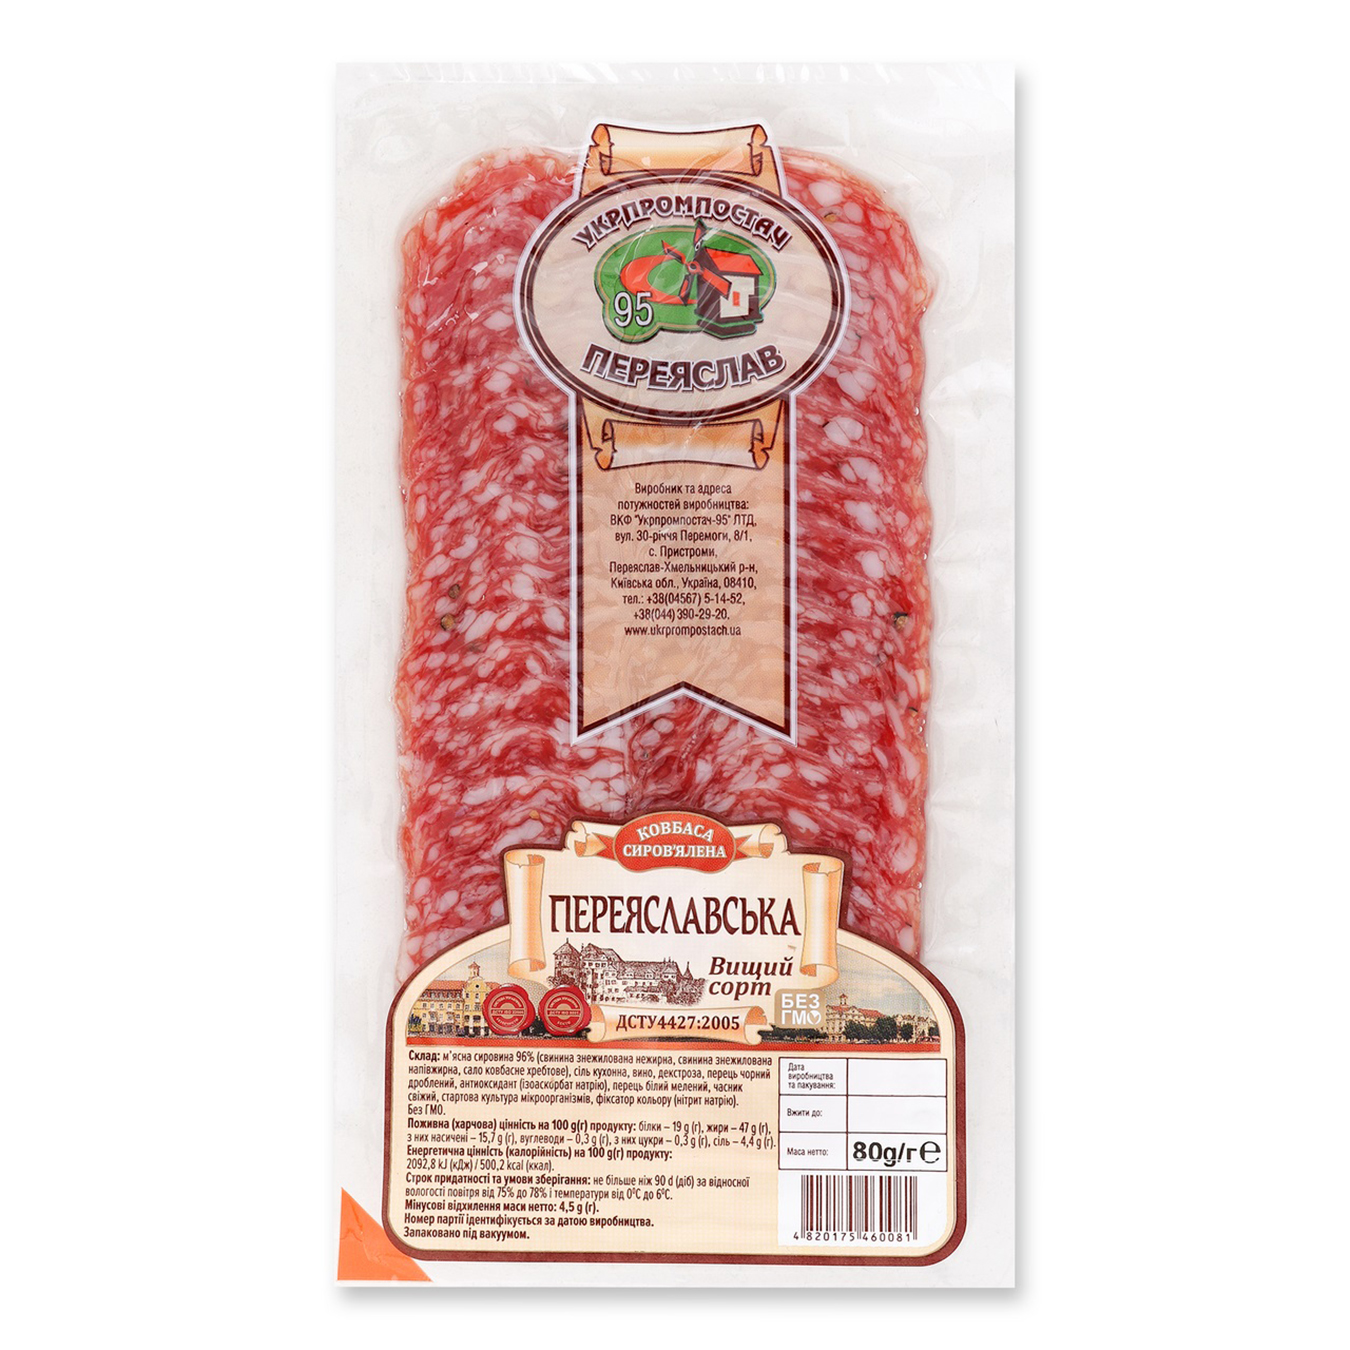 Ukrprompostach-95 Pereyaslavska Damp-Dried Cutted Sausage 80g